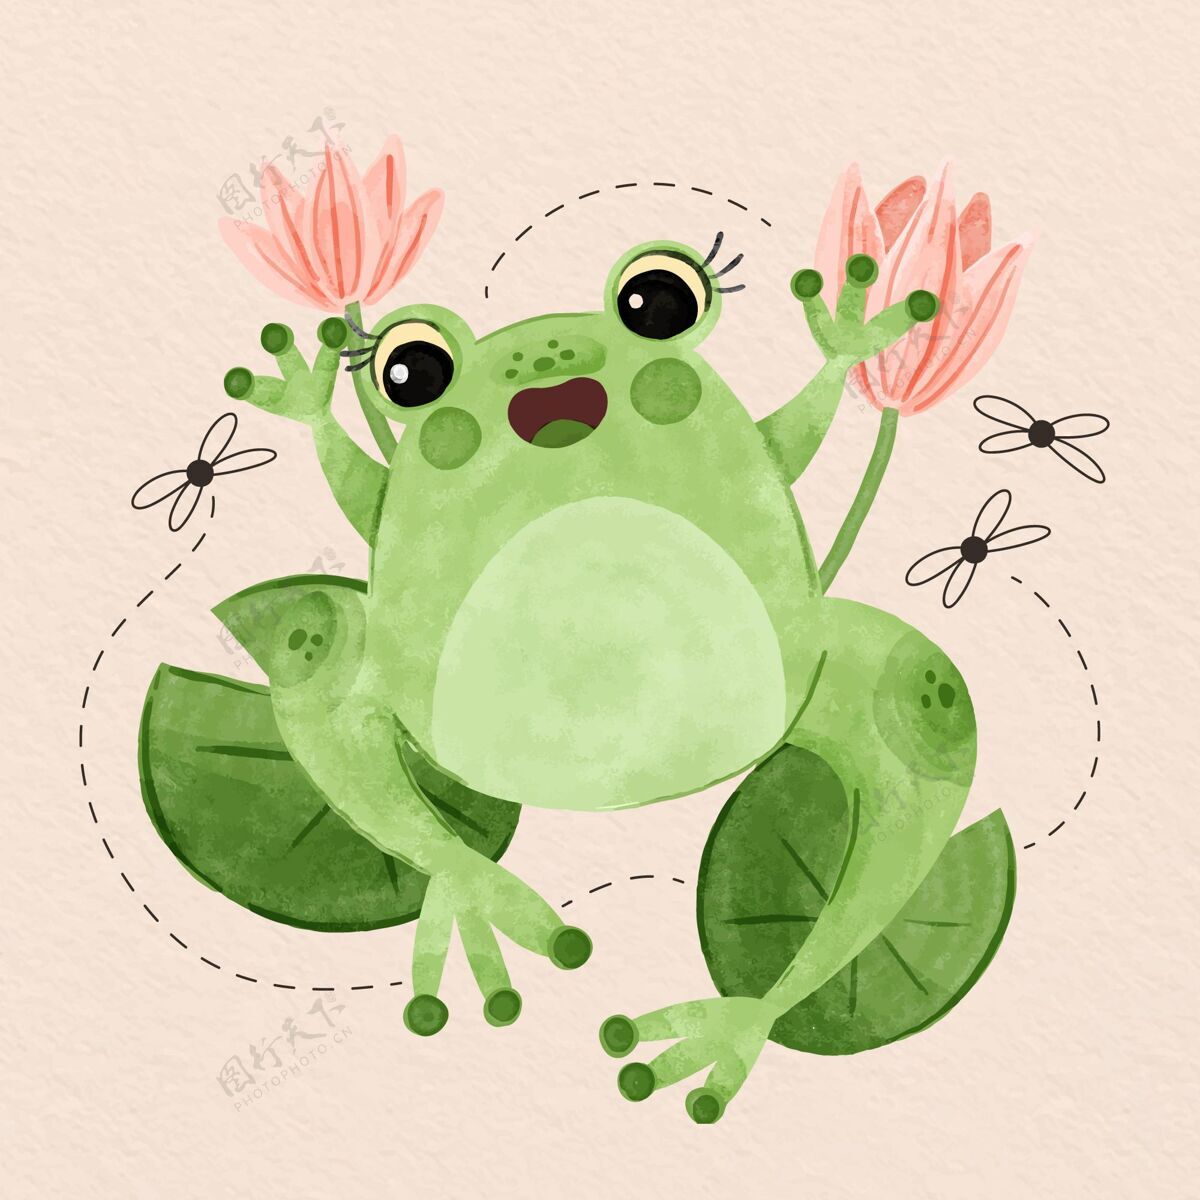 可爱手绘笑脸蛙插图水彩画自然野生动物